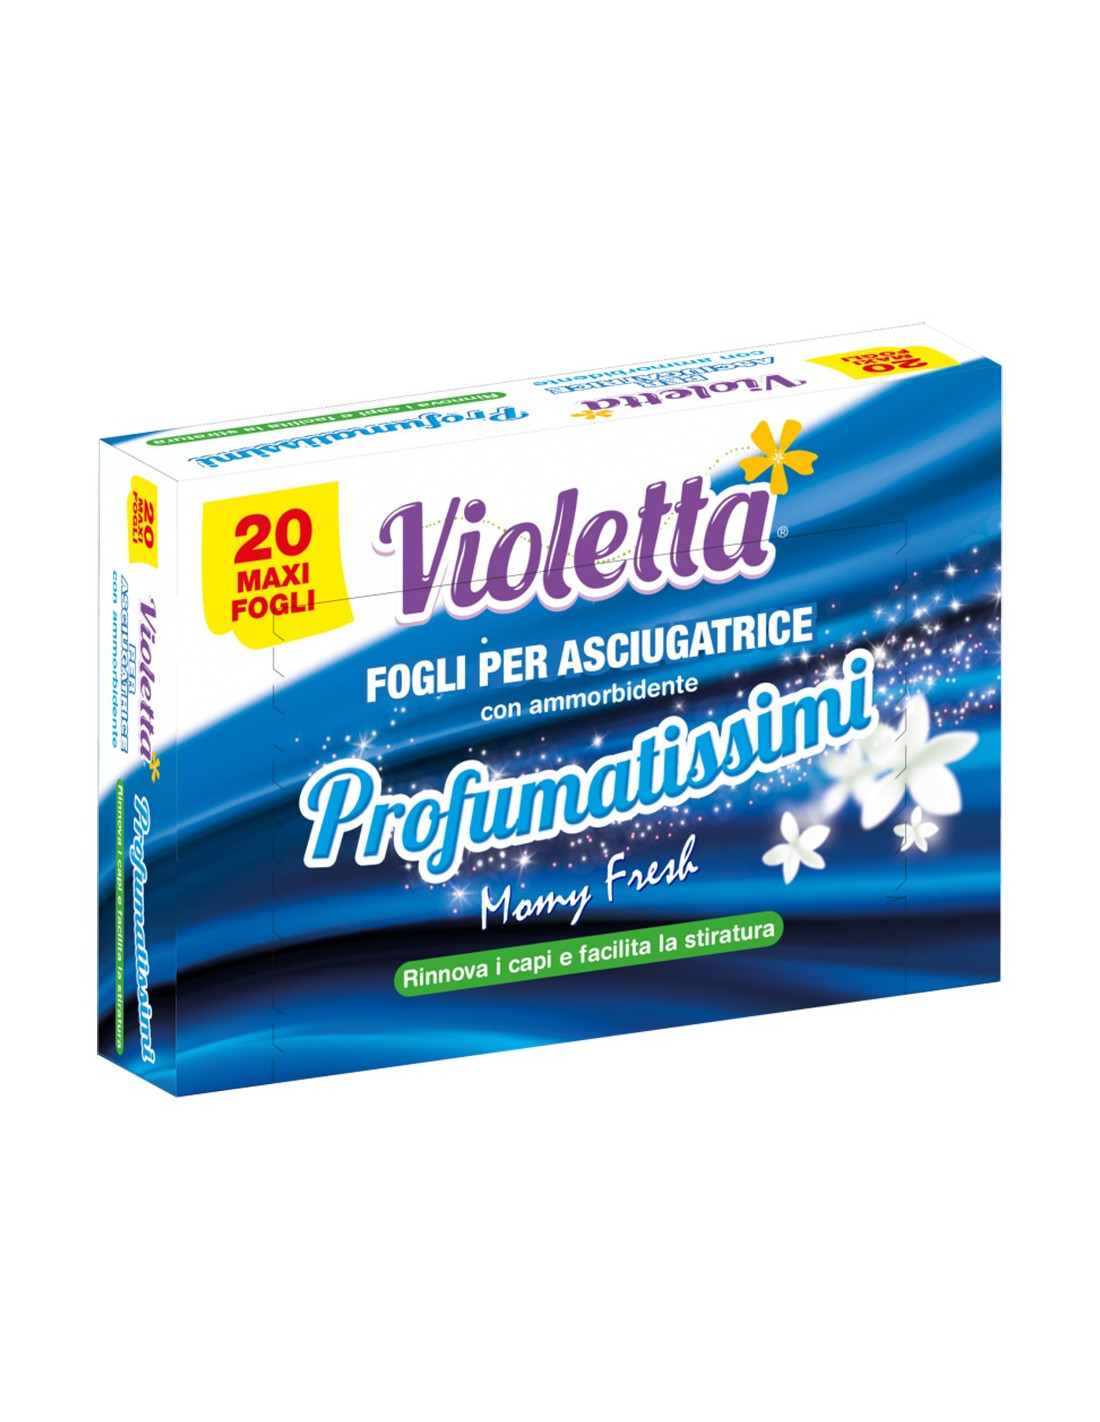 Pack 20 Maxi Fogli Violetta Profumatissimi con Ammorbidente per